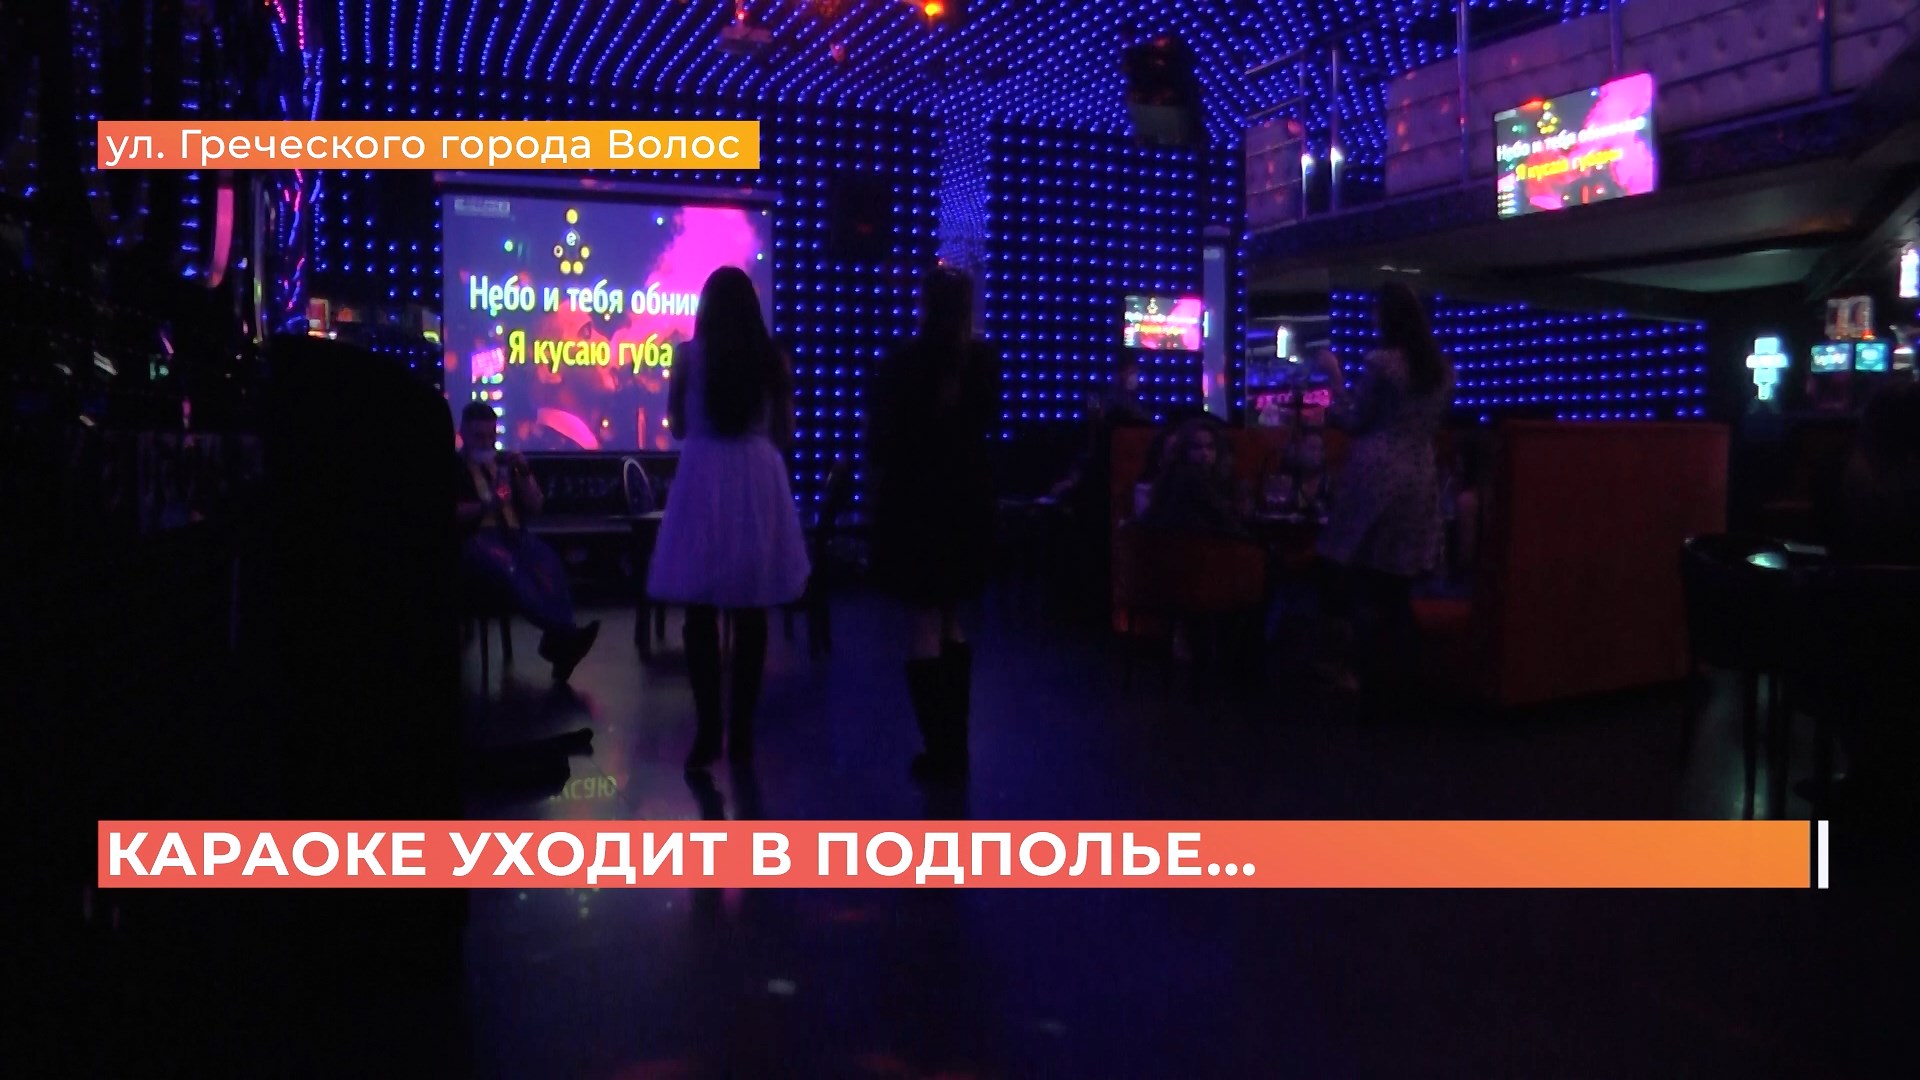 Шпионские игры: клубы и караоке заманивают ростовчан на запрещенные ночные вечеринки